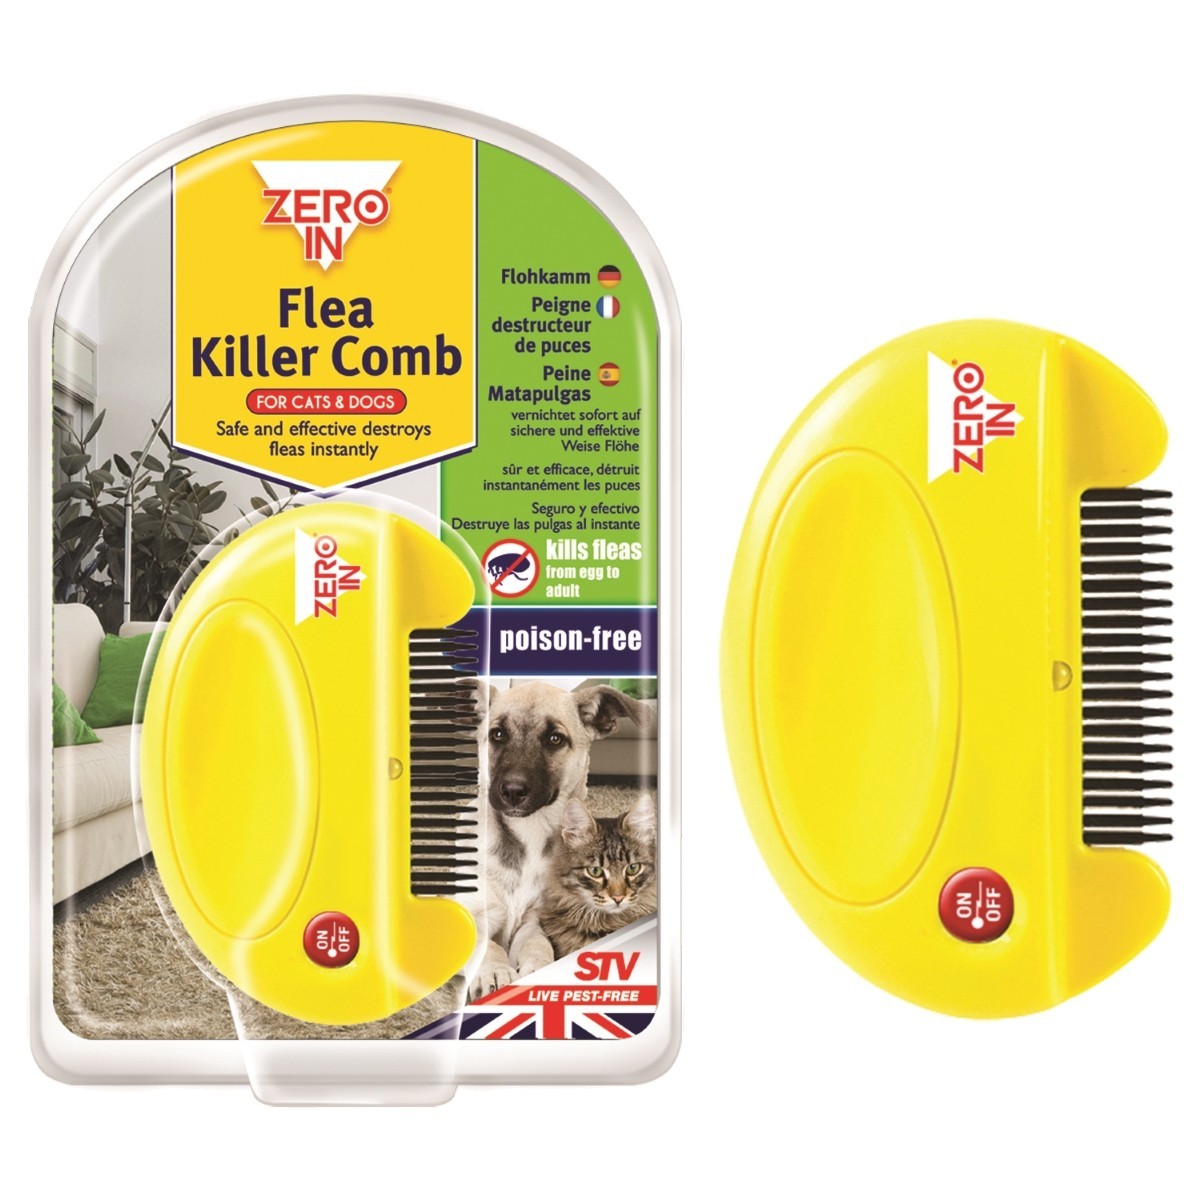 Qw1pt Electric Cleaner Comb Pet Flea Lice Cleaner Comb Electric Dog Flea Cleaning Brush Anti Flea Dog Comb Electronic Lice Comb for Cats Dogs 